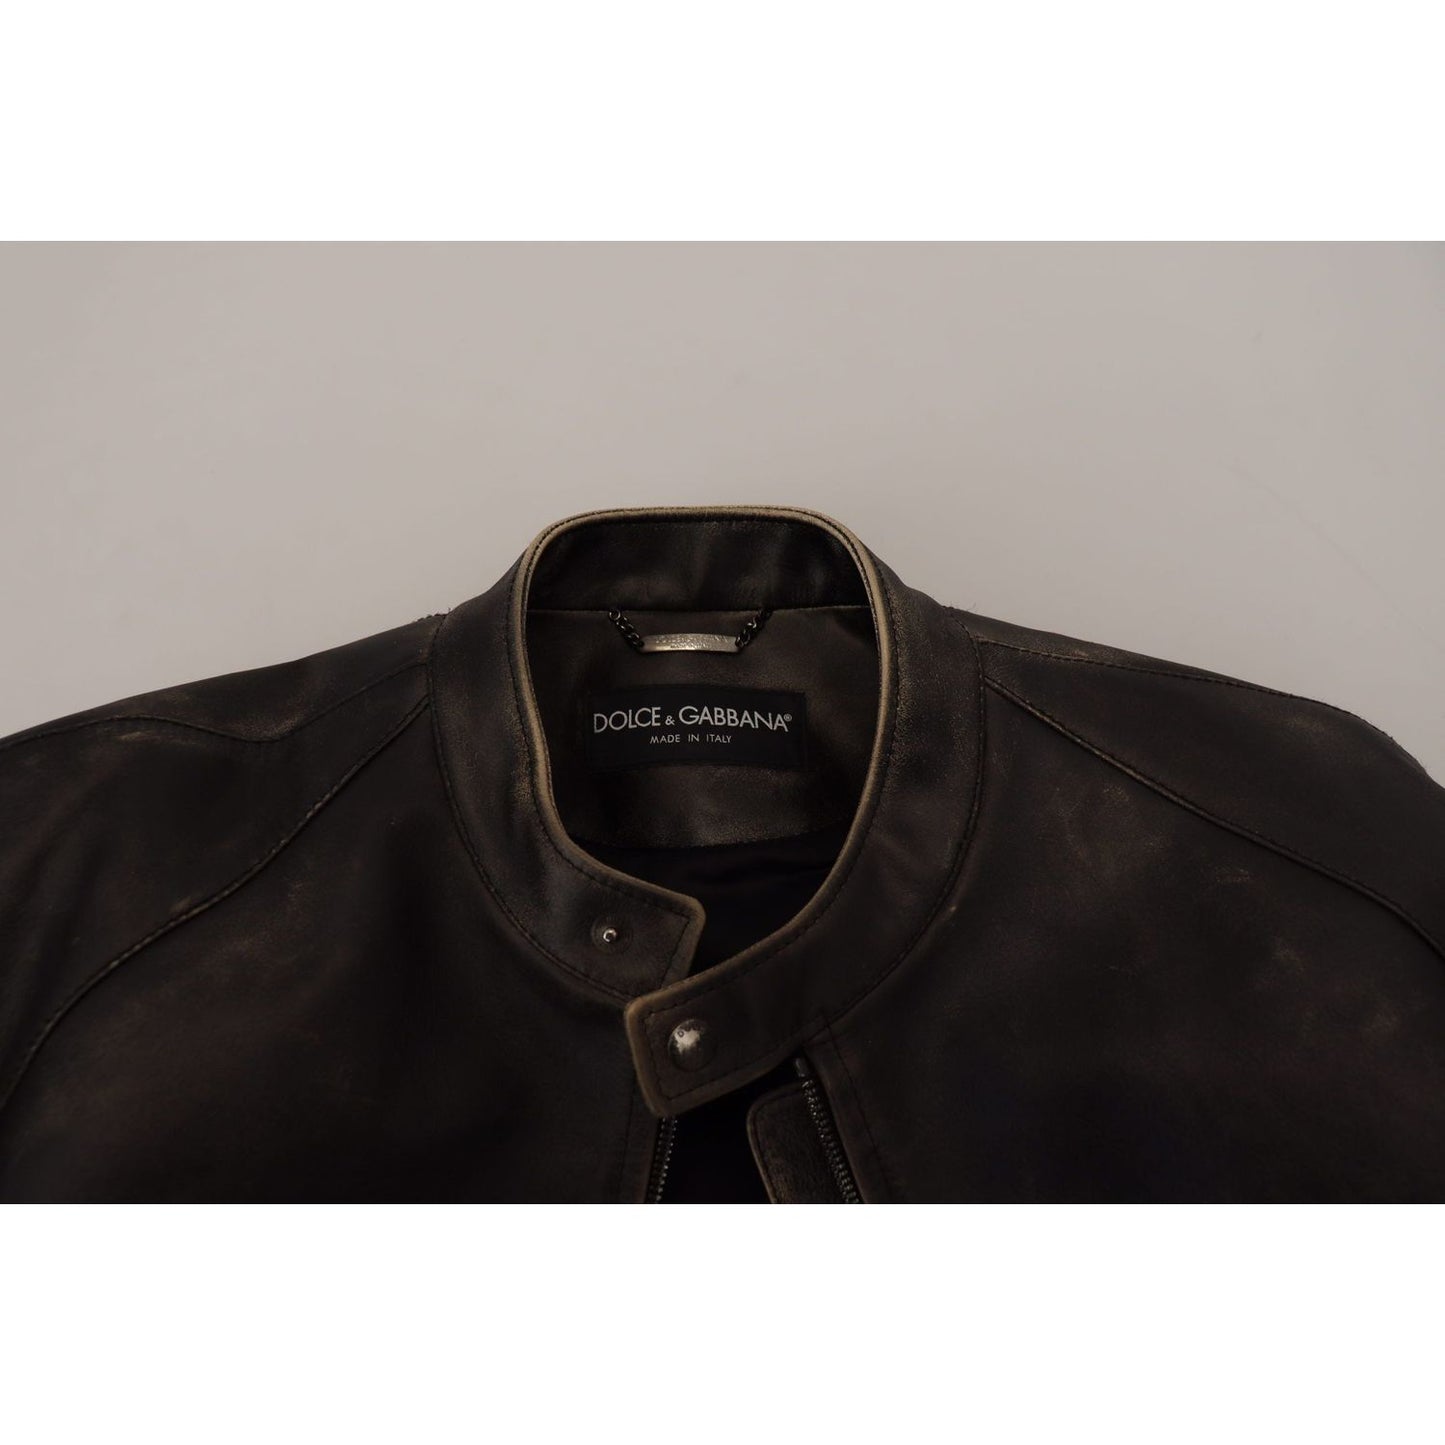 Dolce & Gabbana Elegant Black Leather Jacket with Silver Details black-leather-zipper-biker-coat-jacket